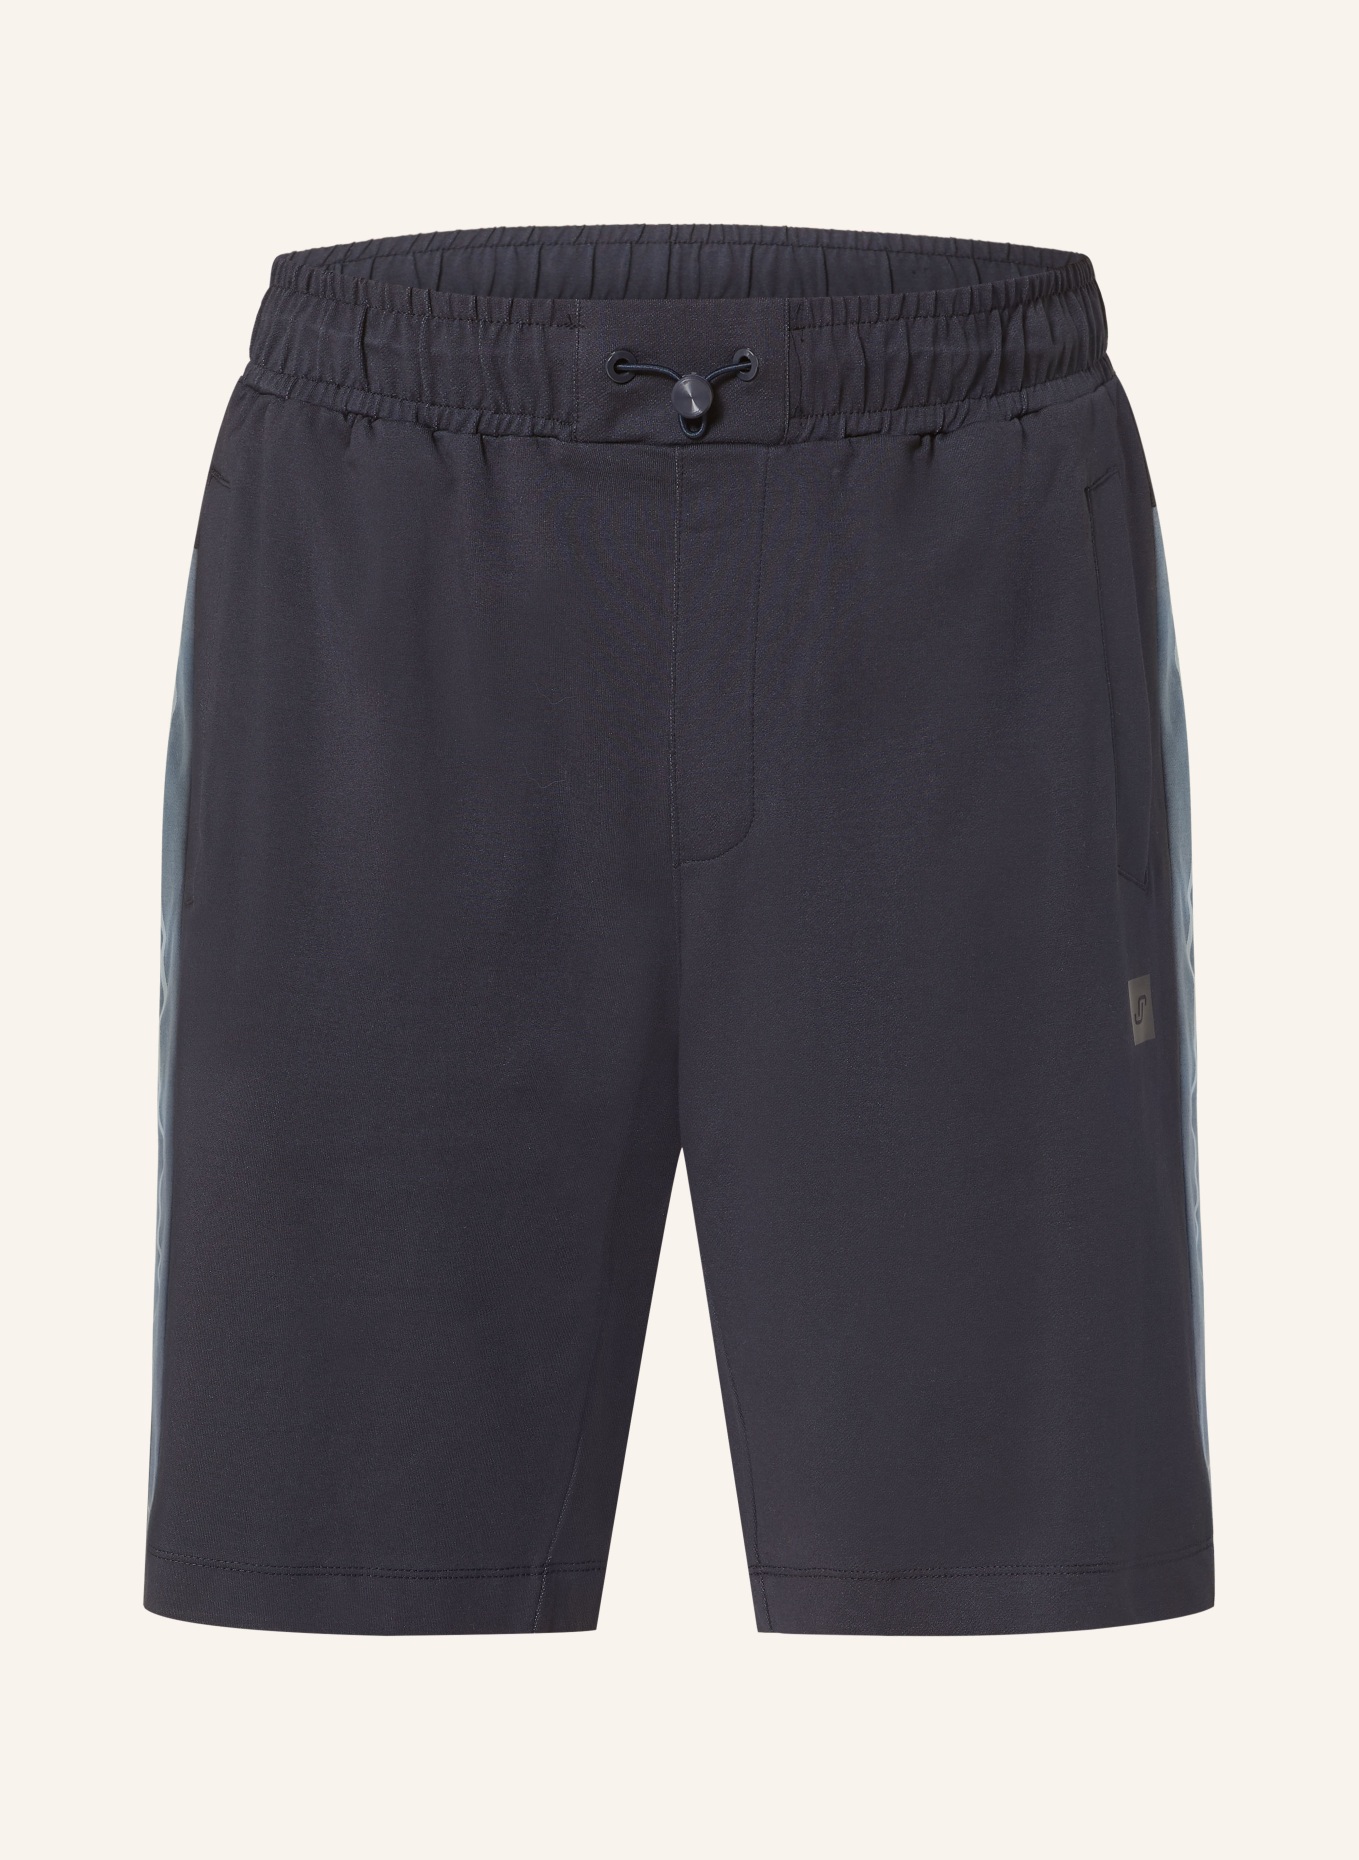 JOY sportswear Sweat shorts JESKO regular fit, Color: DARK BLUE (Image 1)